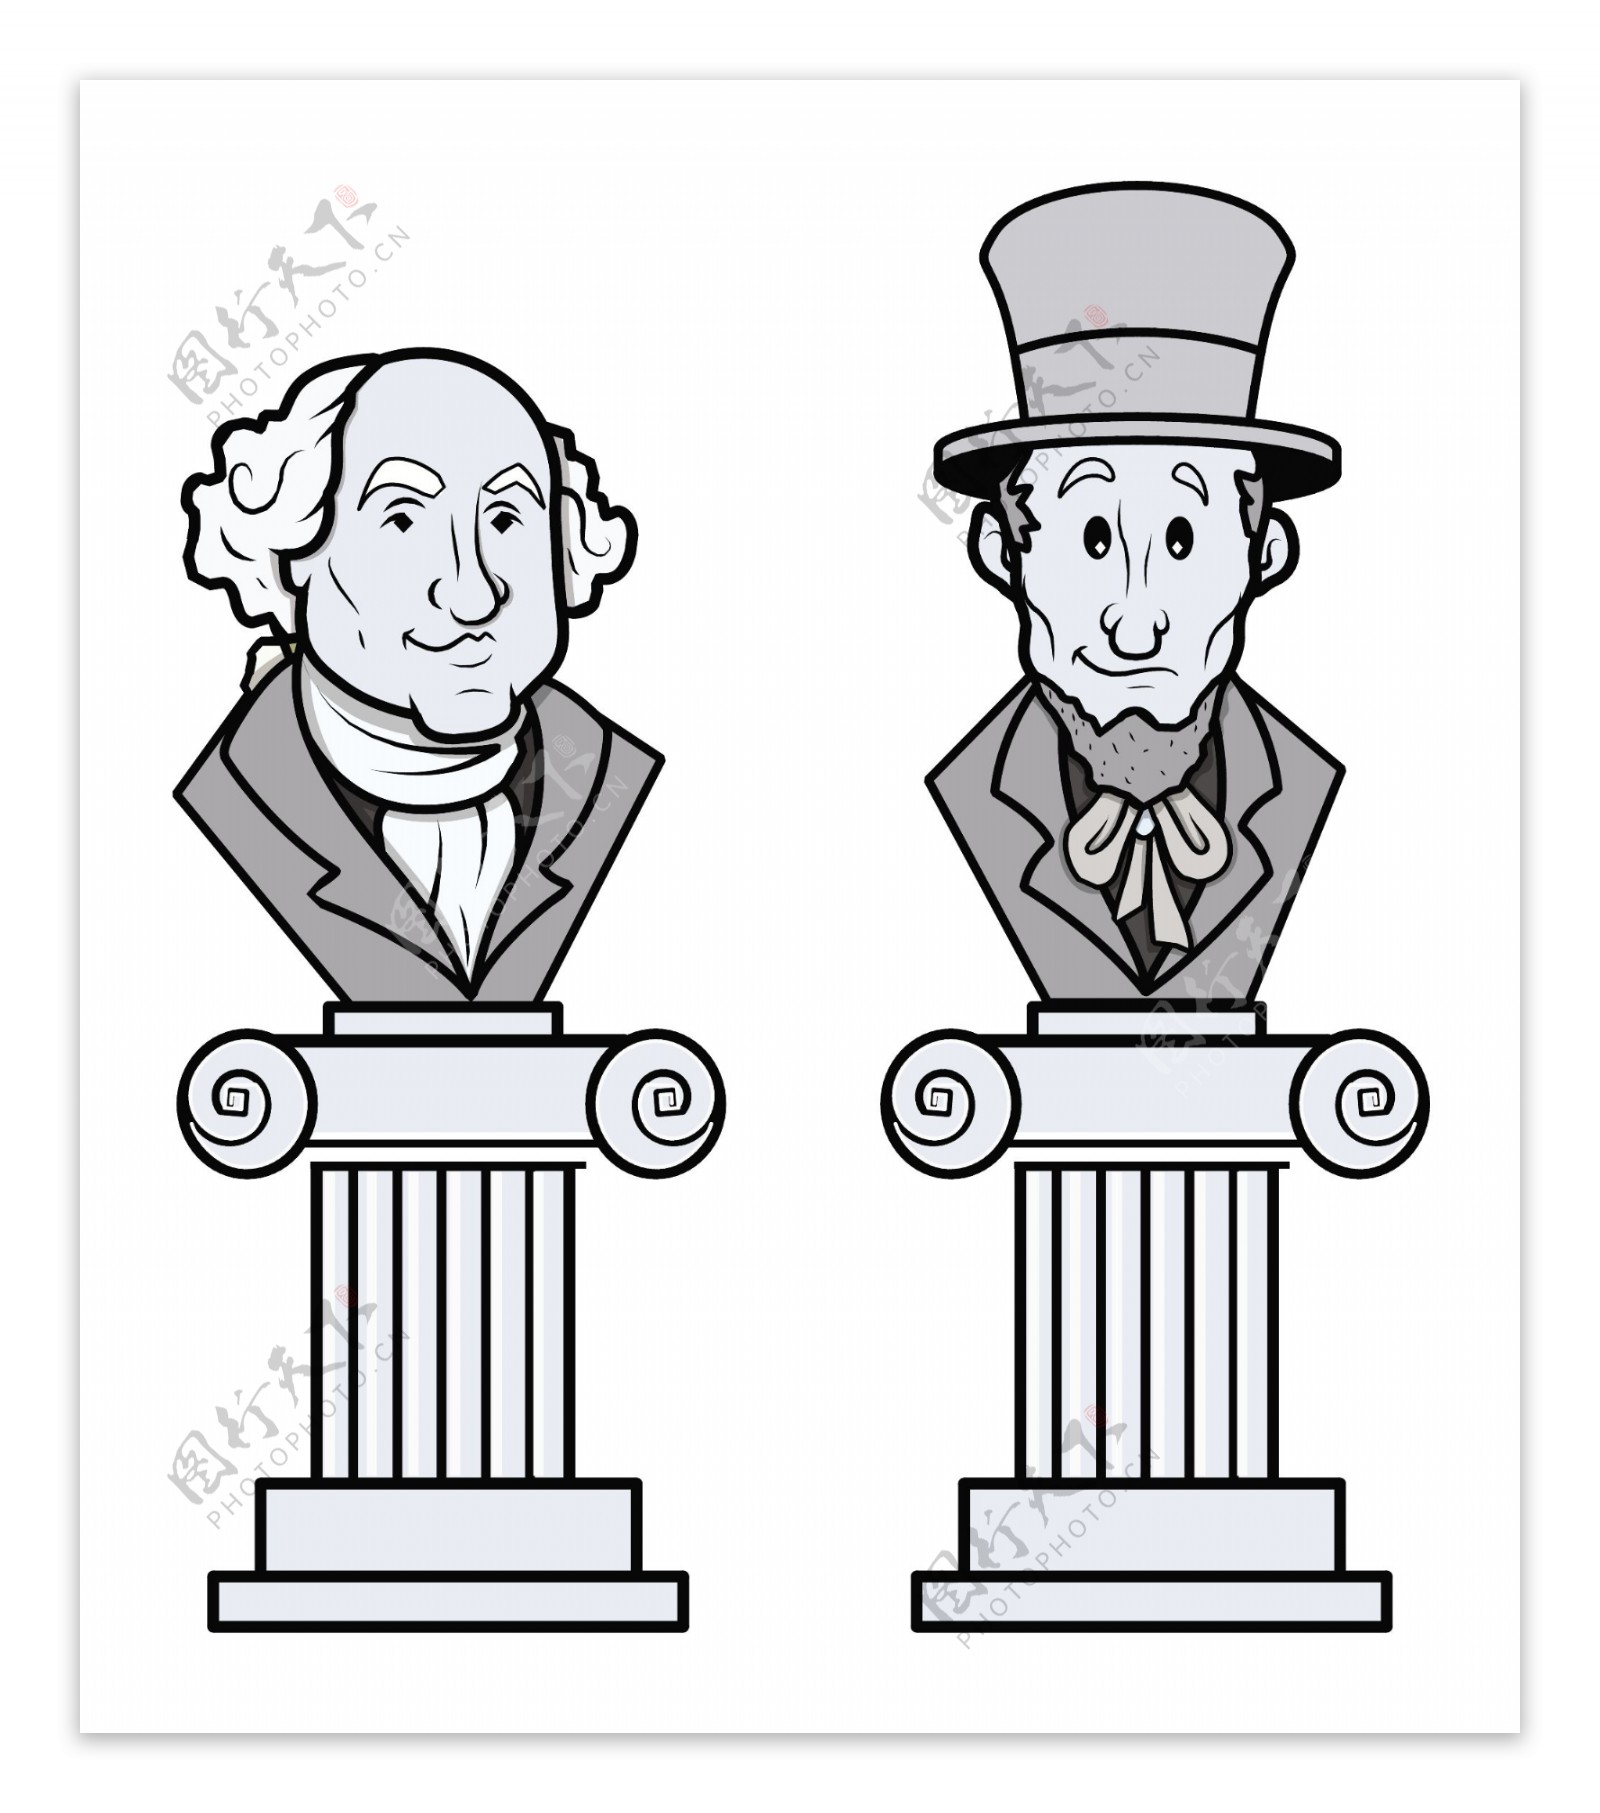 亚伯拉罕林肯和乔治华盛顿矢量剪贴艺术雕塑